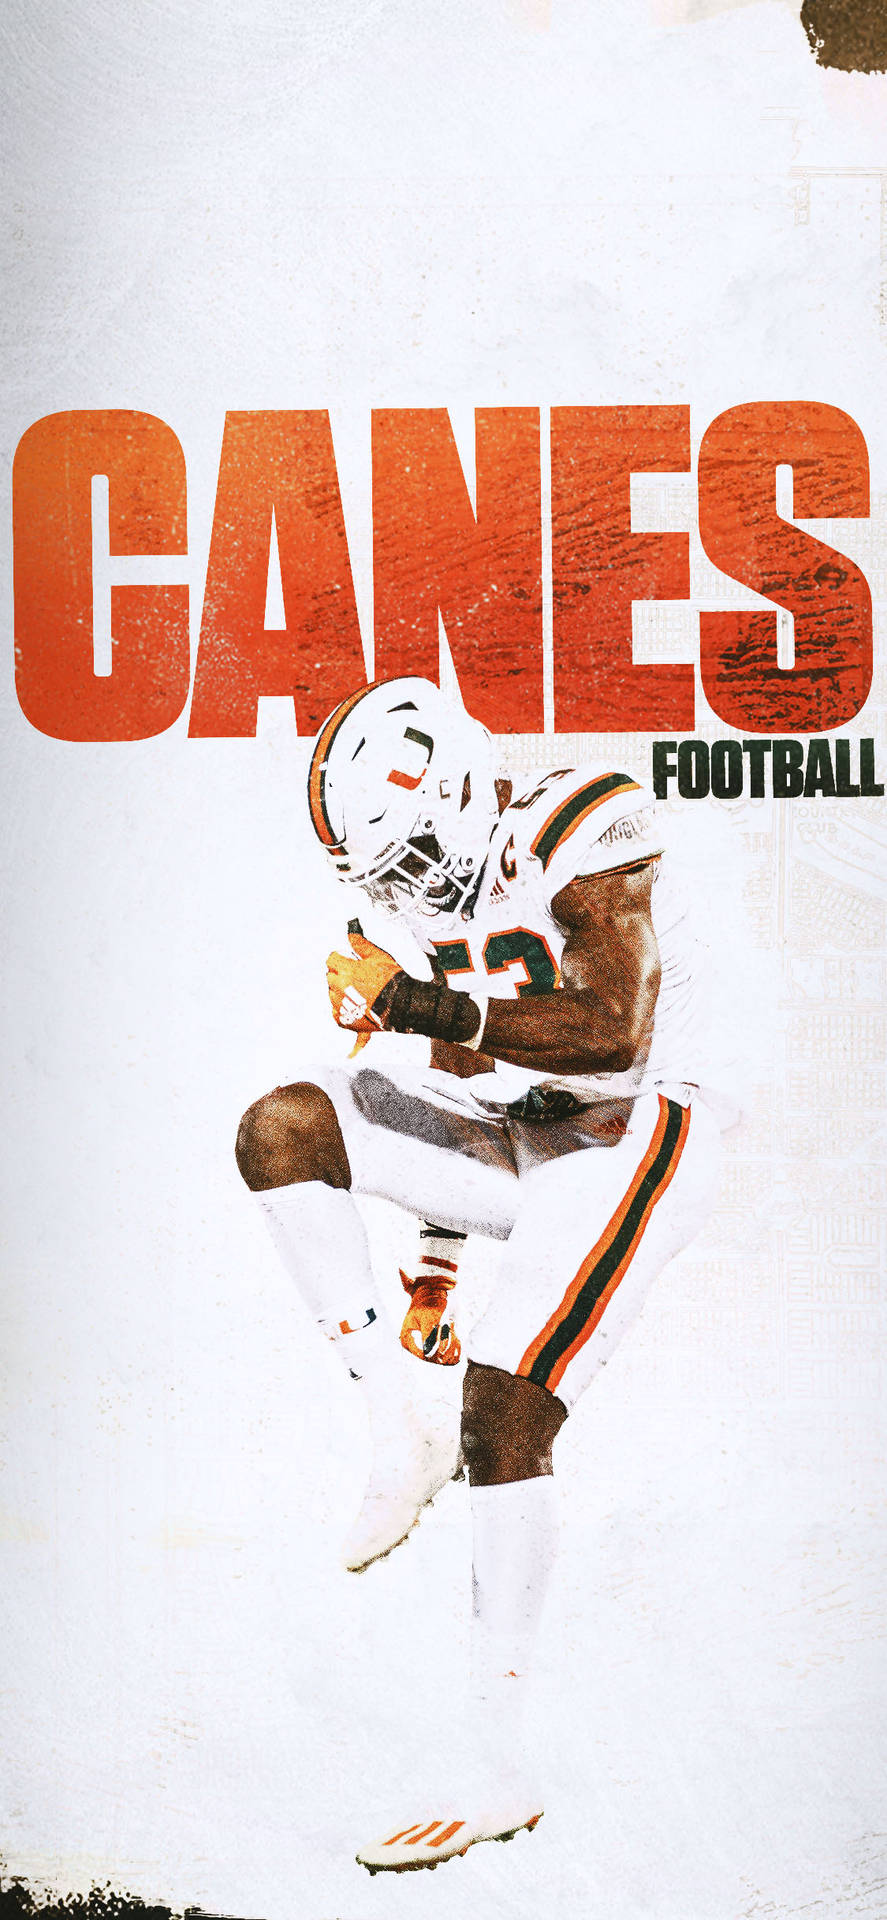 Tapet af University Of Miami-spillere: Se universityets fodboldspillere i aktion på dette fotografiske tapet. Wallpaper